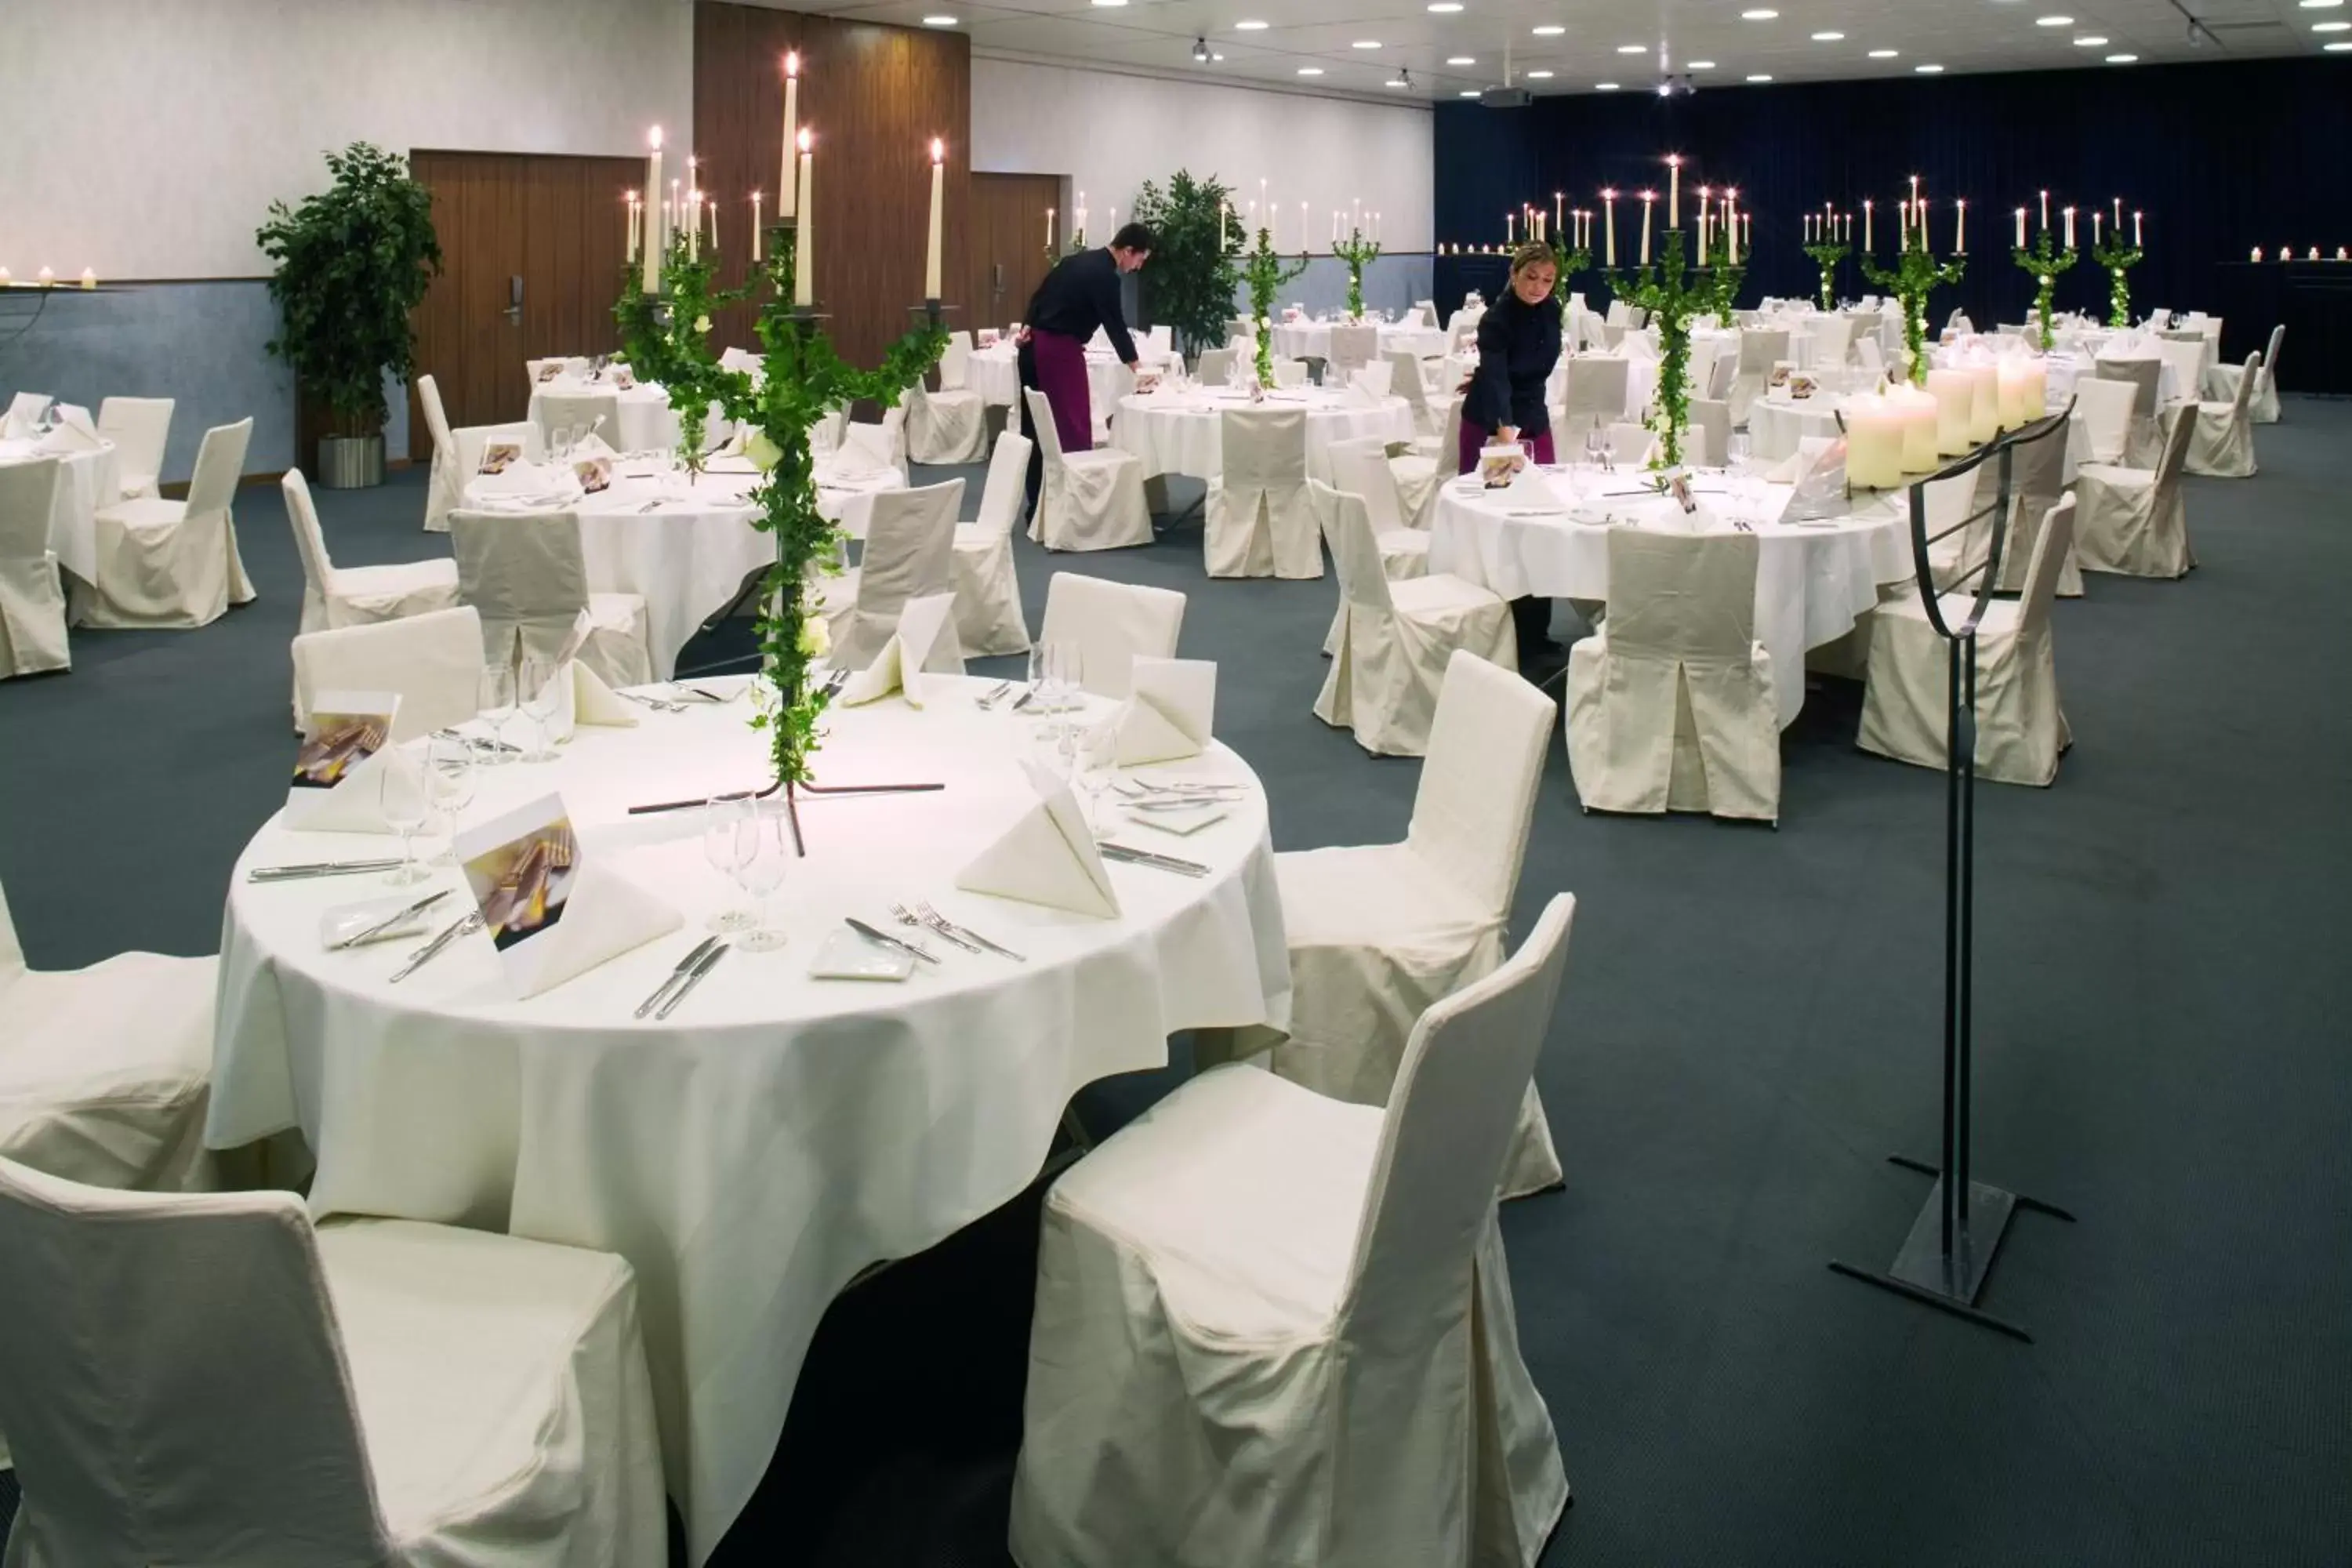 Banquet/Function facilities, Banquet Facilities in Mövenpick Hotel Zurich Airport